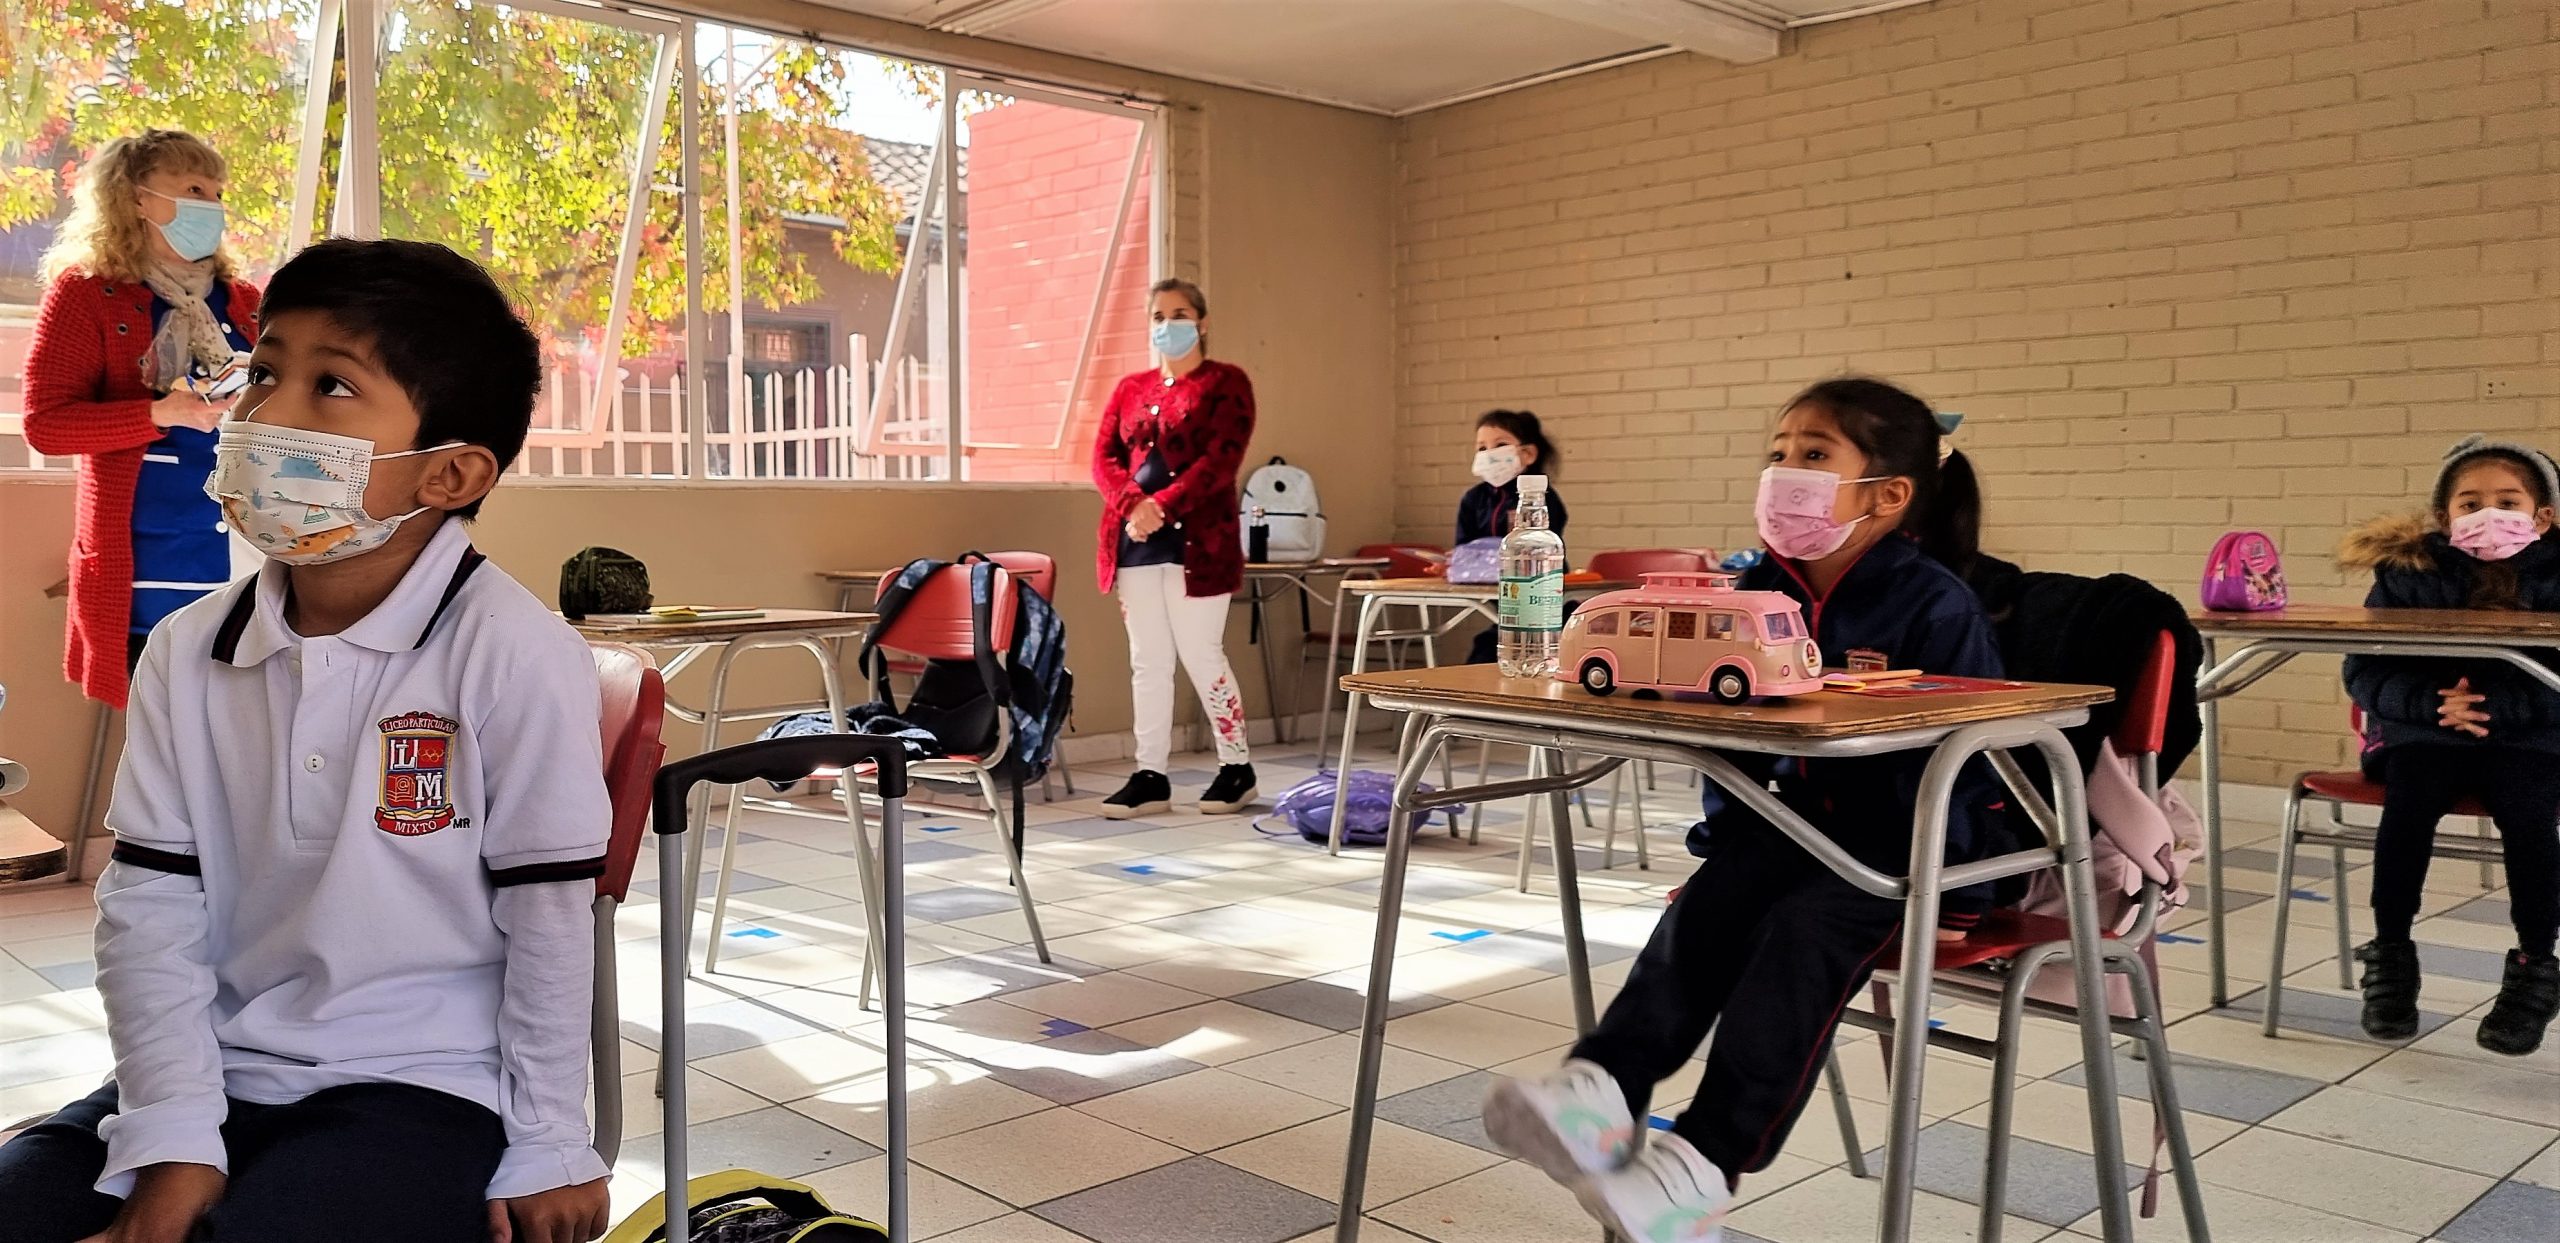 EDUCACIÓN: Liceo Mixto habilitó para Los Andes y San Felipe plataforma online de pre matrícula para alumnos antiguos y nuevos